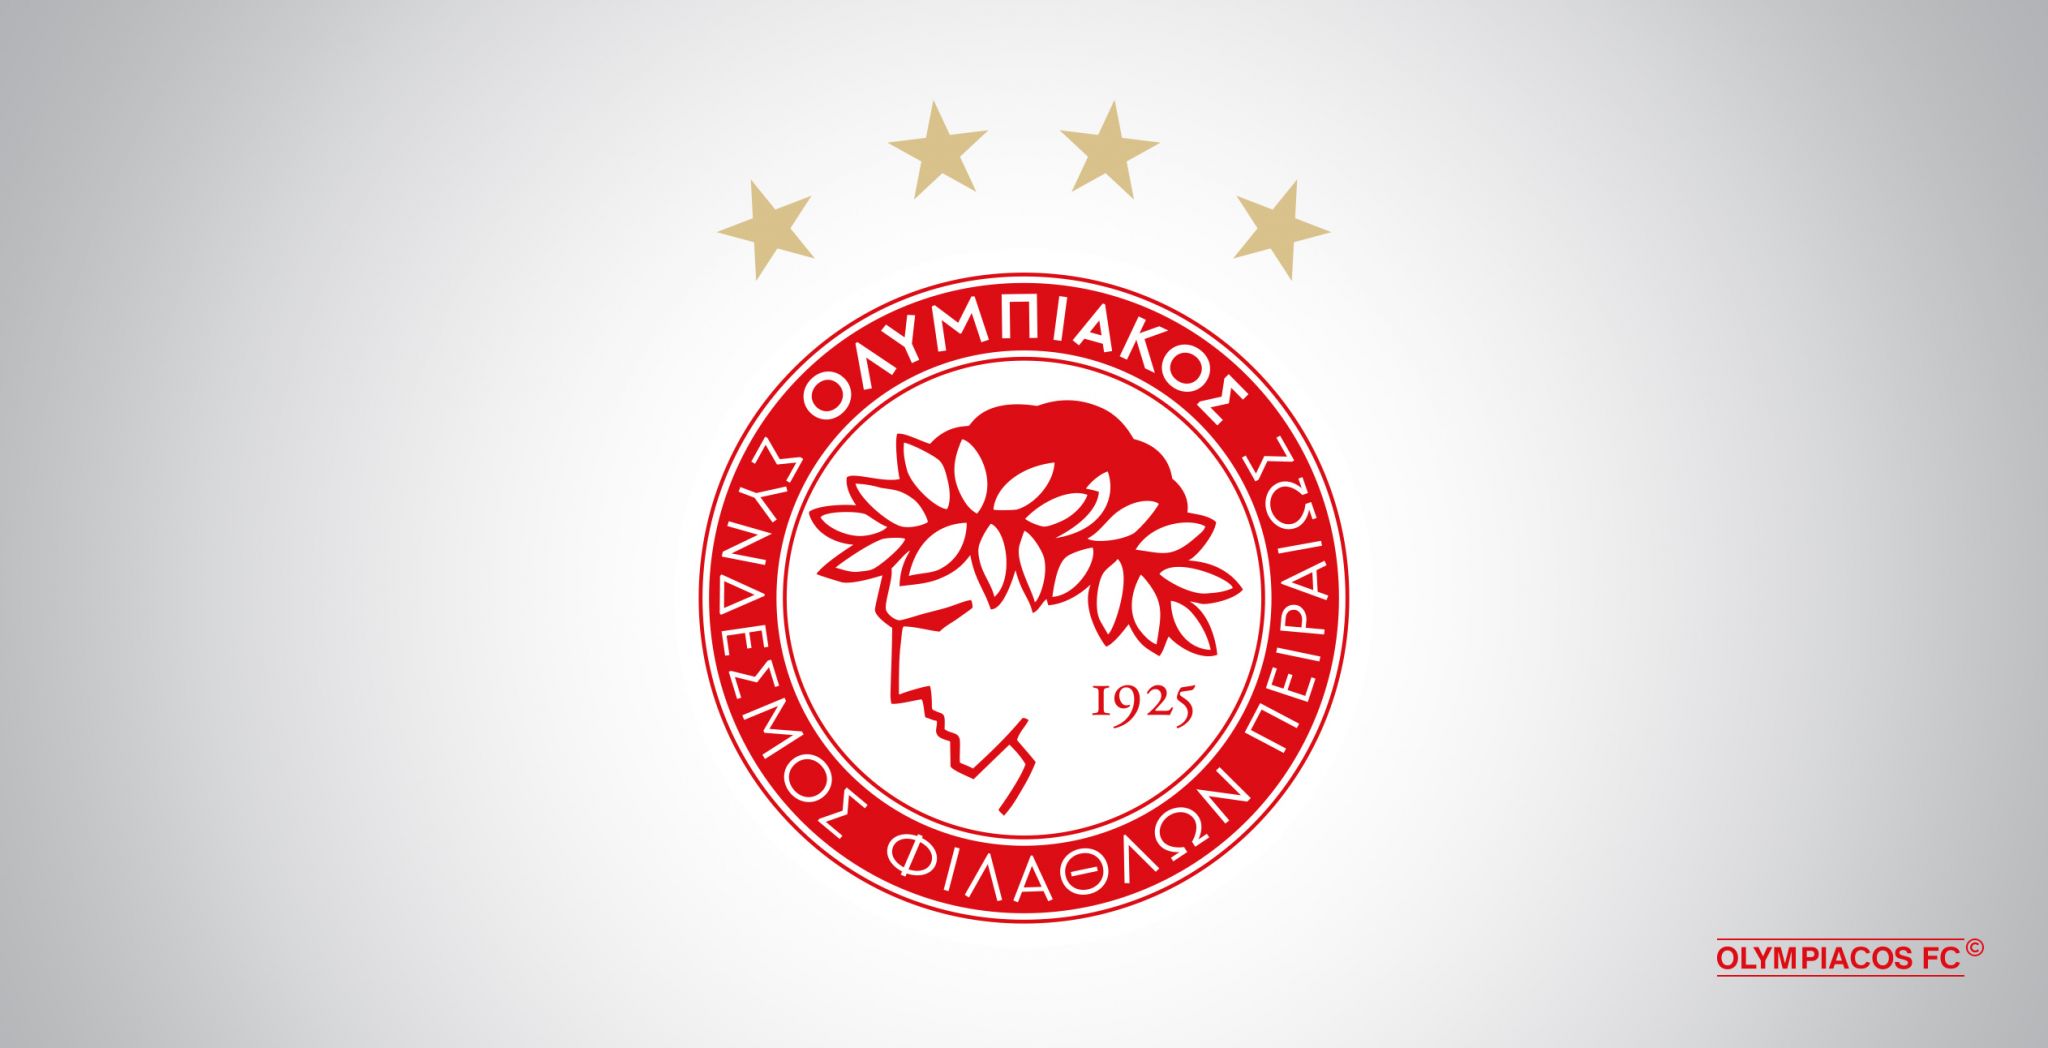 Communiqué de presse de l’Olympiacos FC